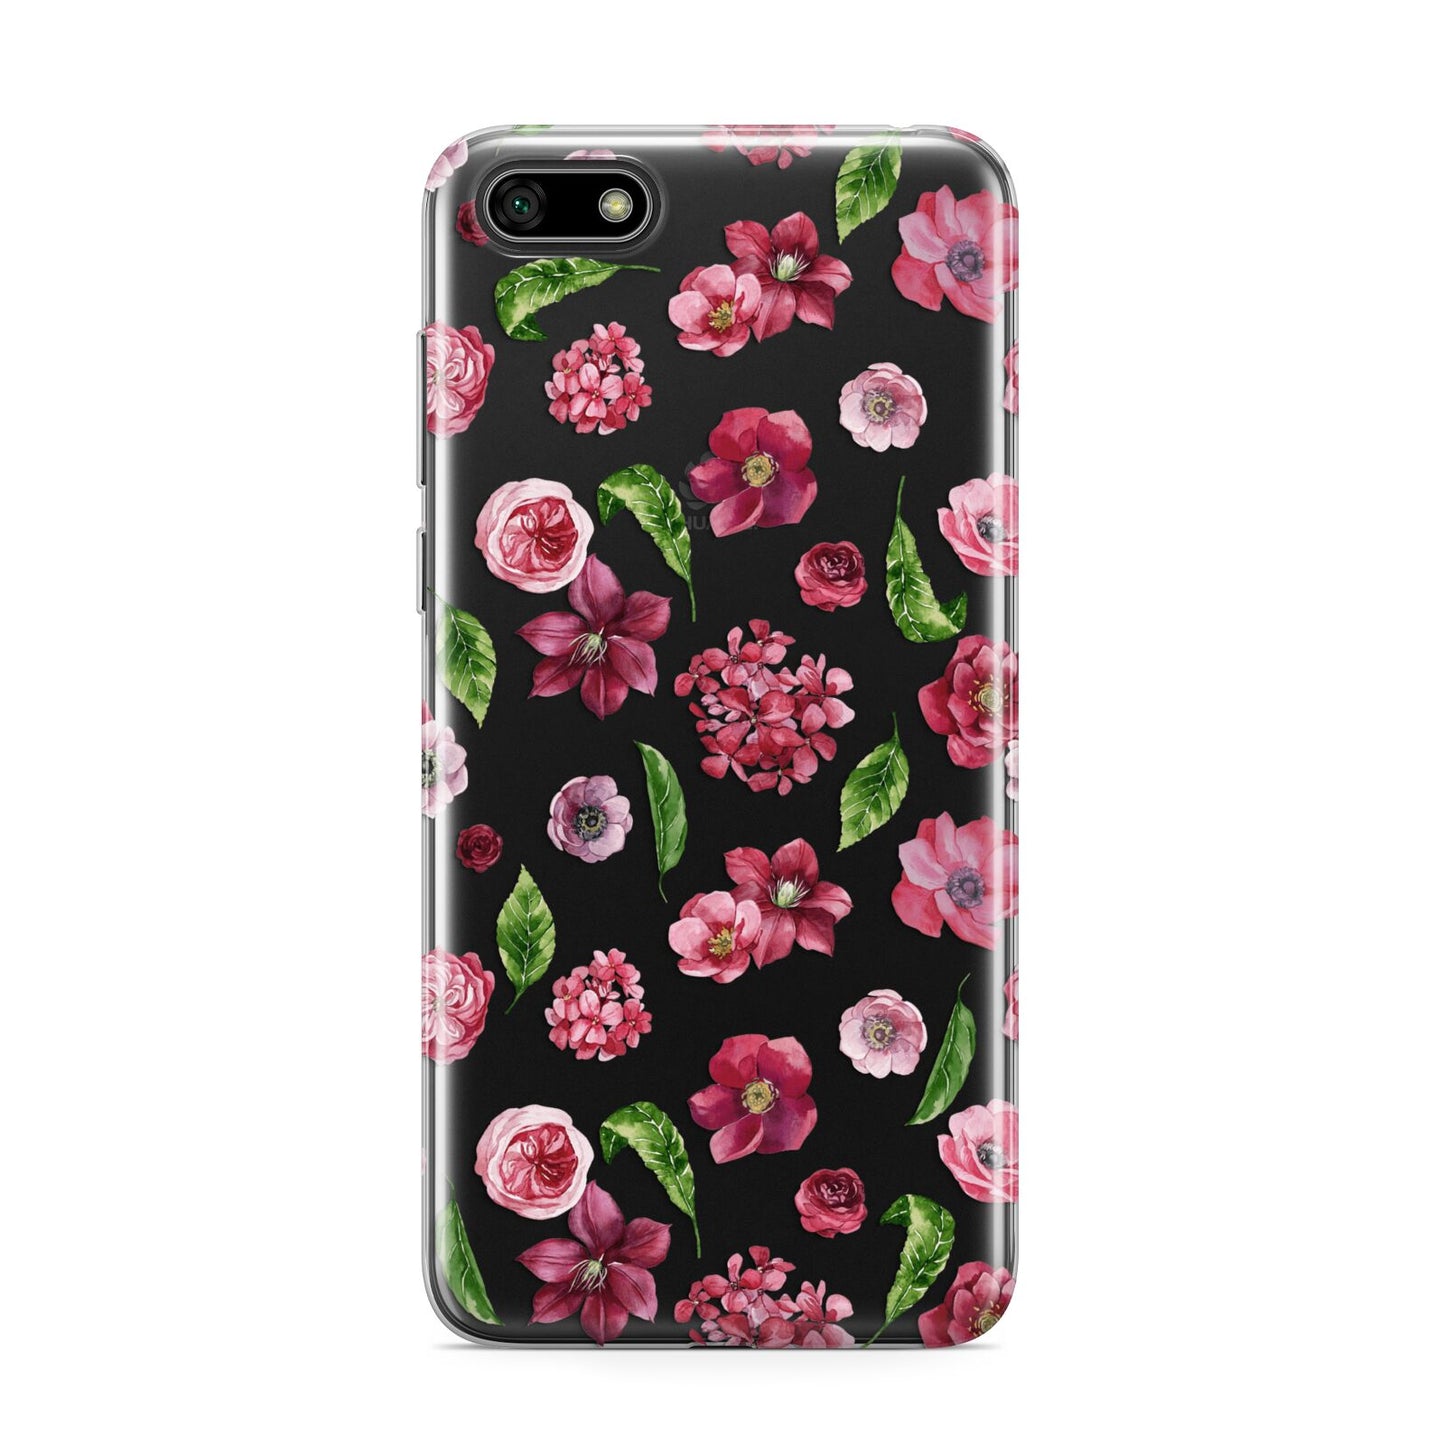 Pink Floral Huawei Y5 Prime 2018 Phone Case